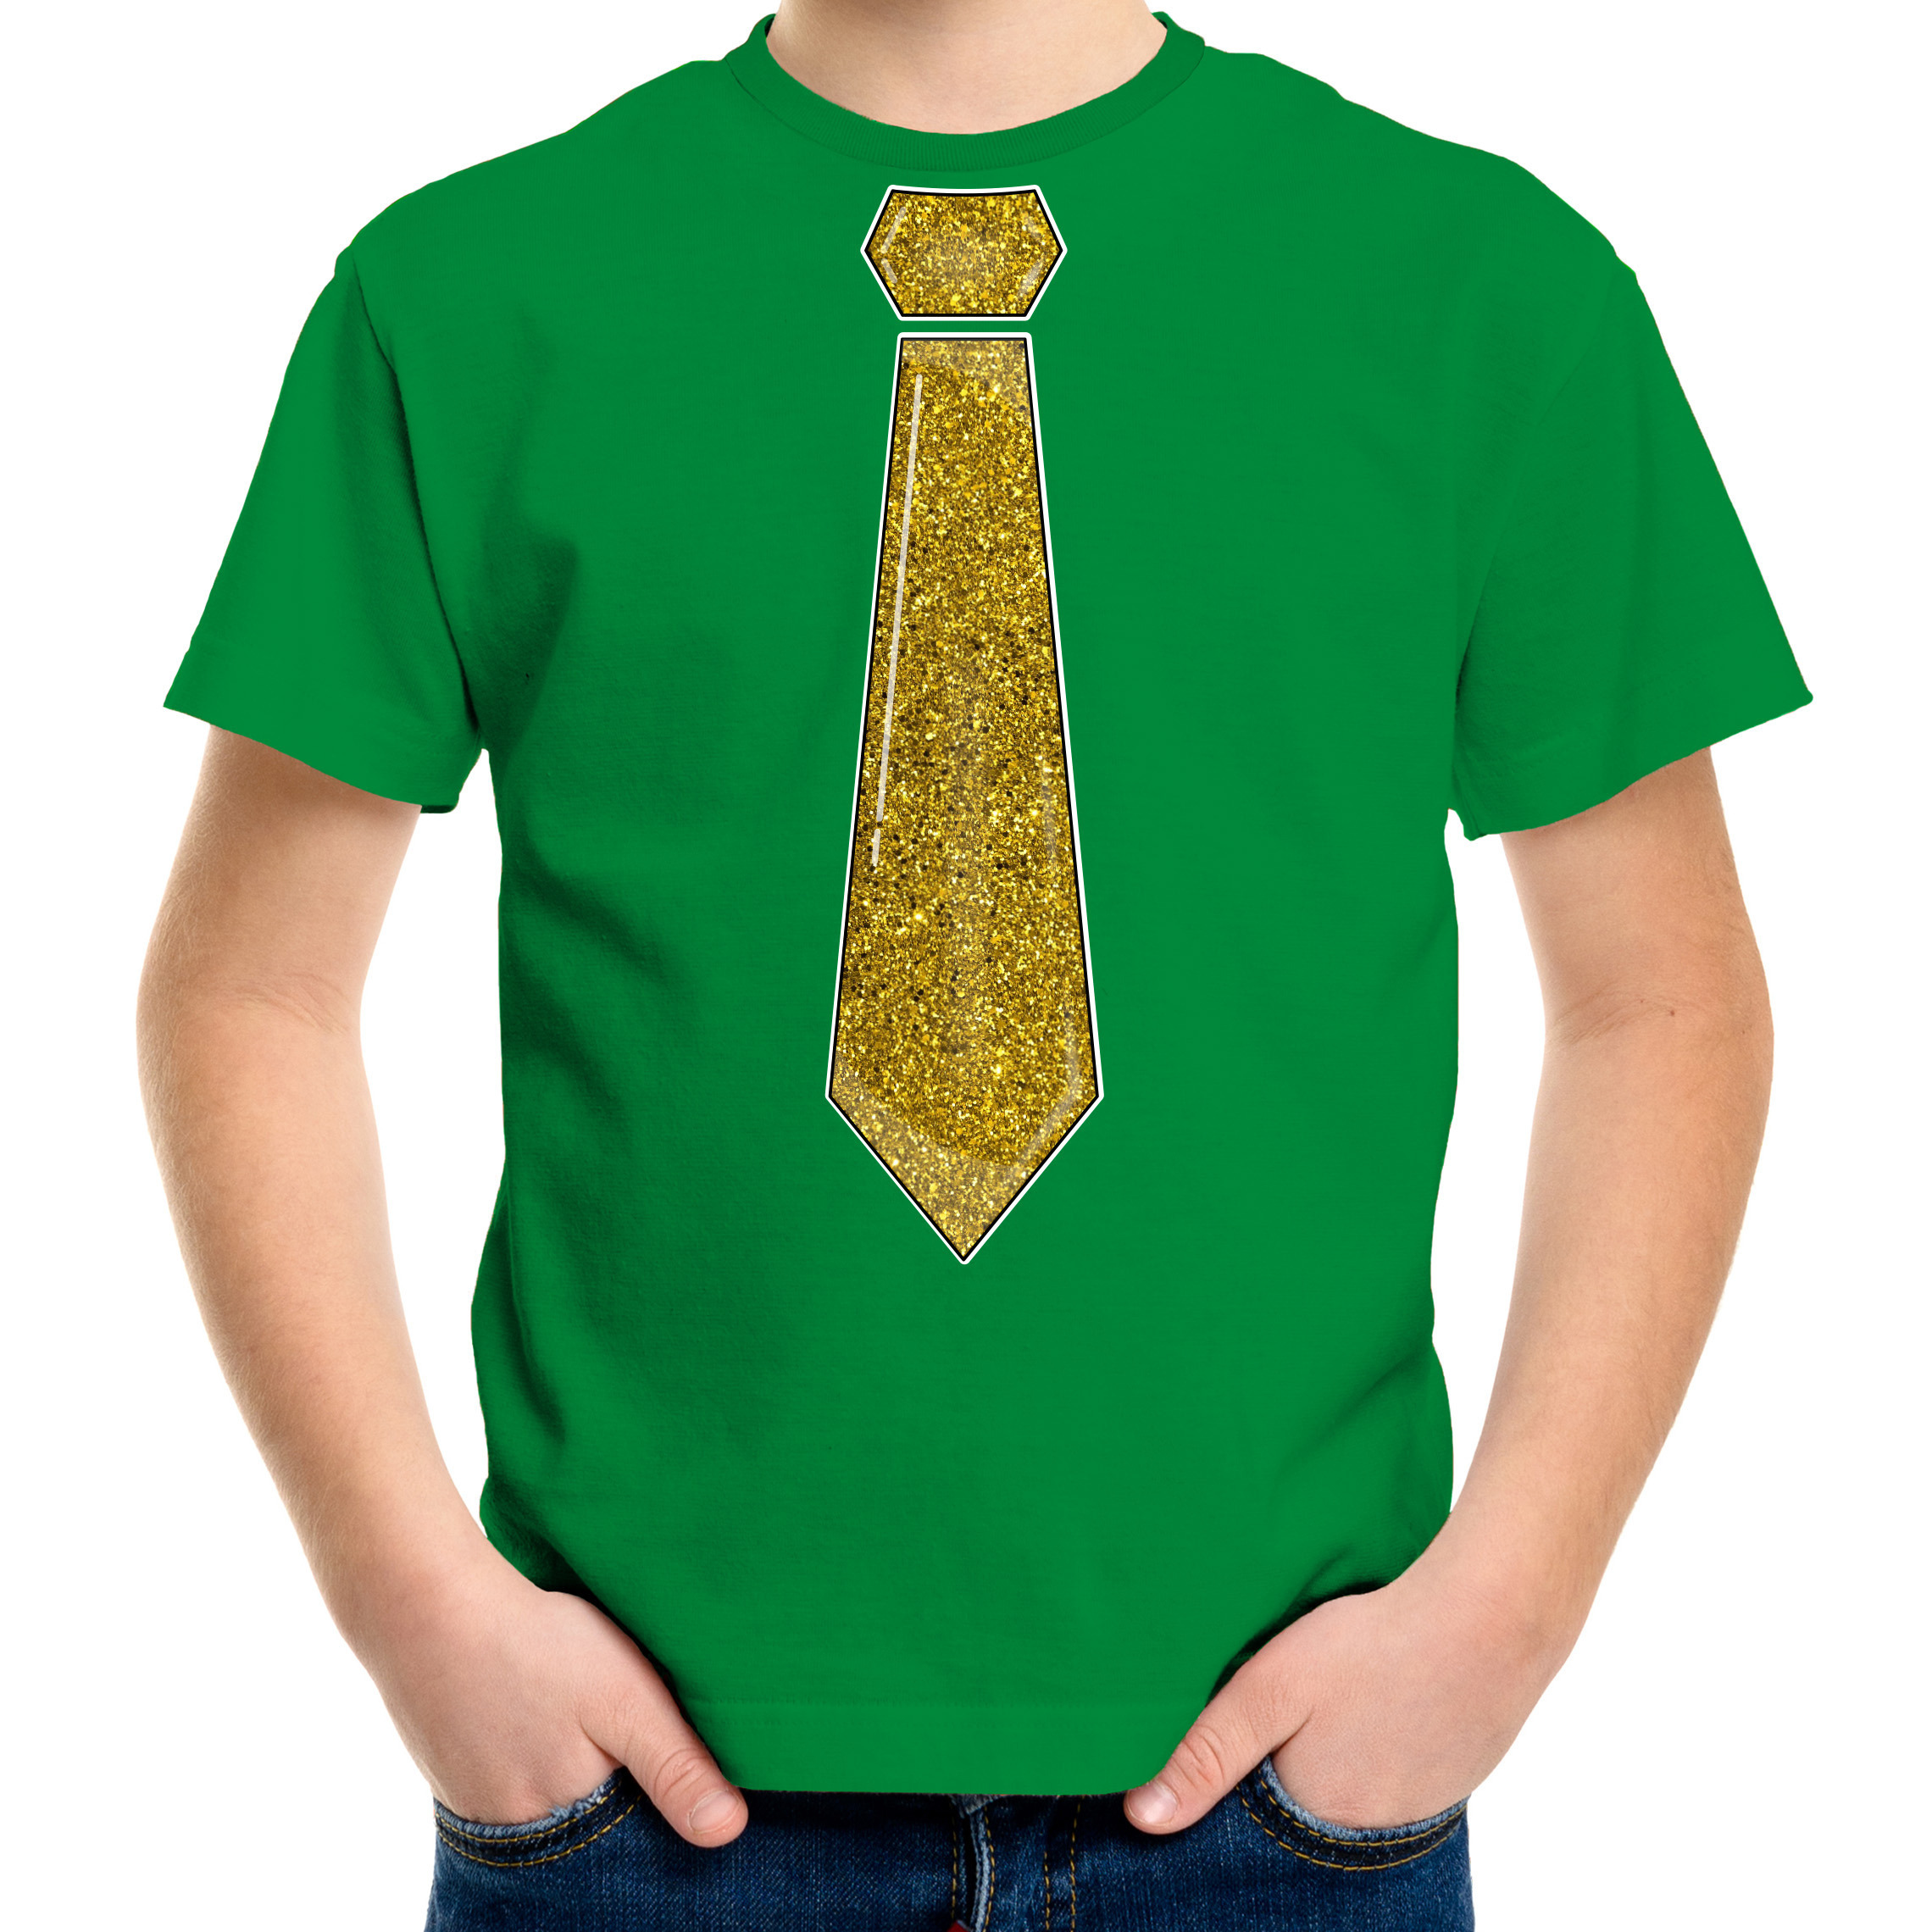 Verkleed t-shirt voor kinderen glitter stropdas groen jongen carnaval-themafeest kostuum